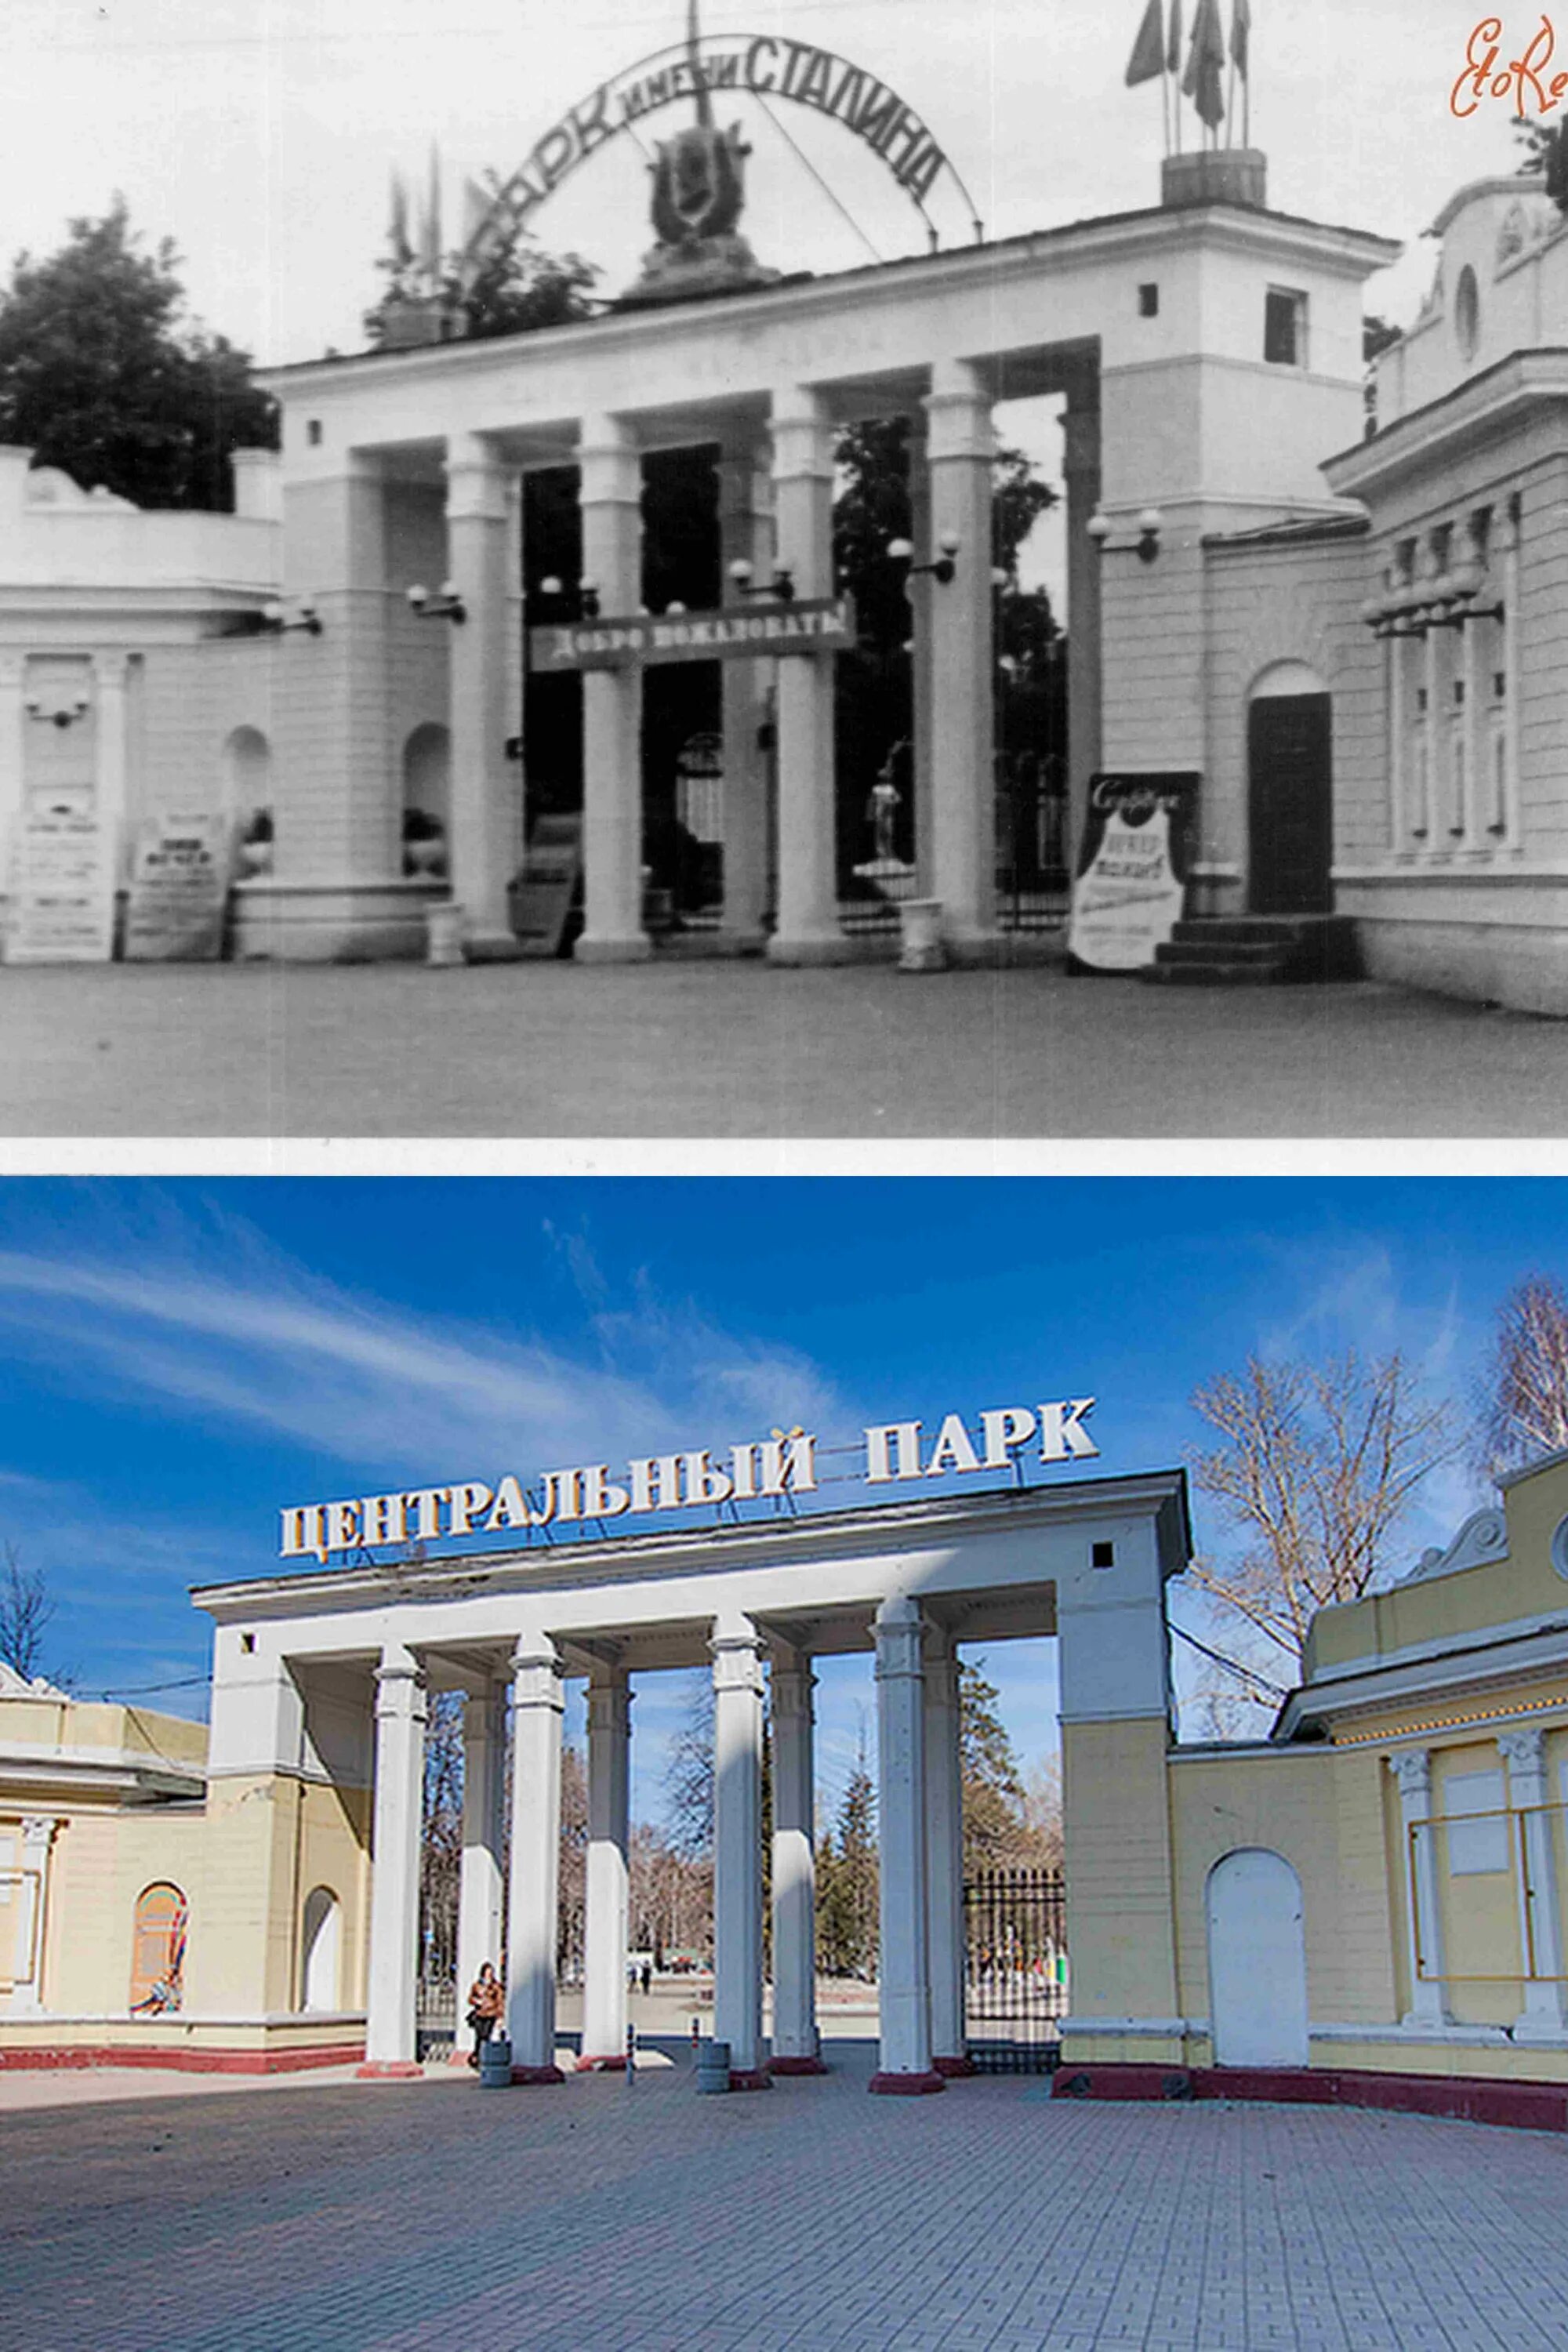 Слово сейчас в прошлом. Новосибирск в прошлом и сейчас. Центральный парк Новосибирск раньше. Город Новосибирск в прошлом. Центральный парк старый и новый Новосибирск.